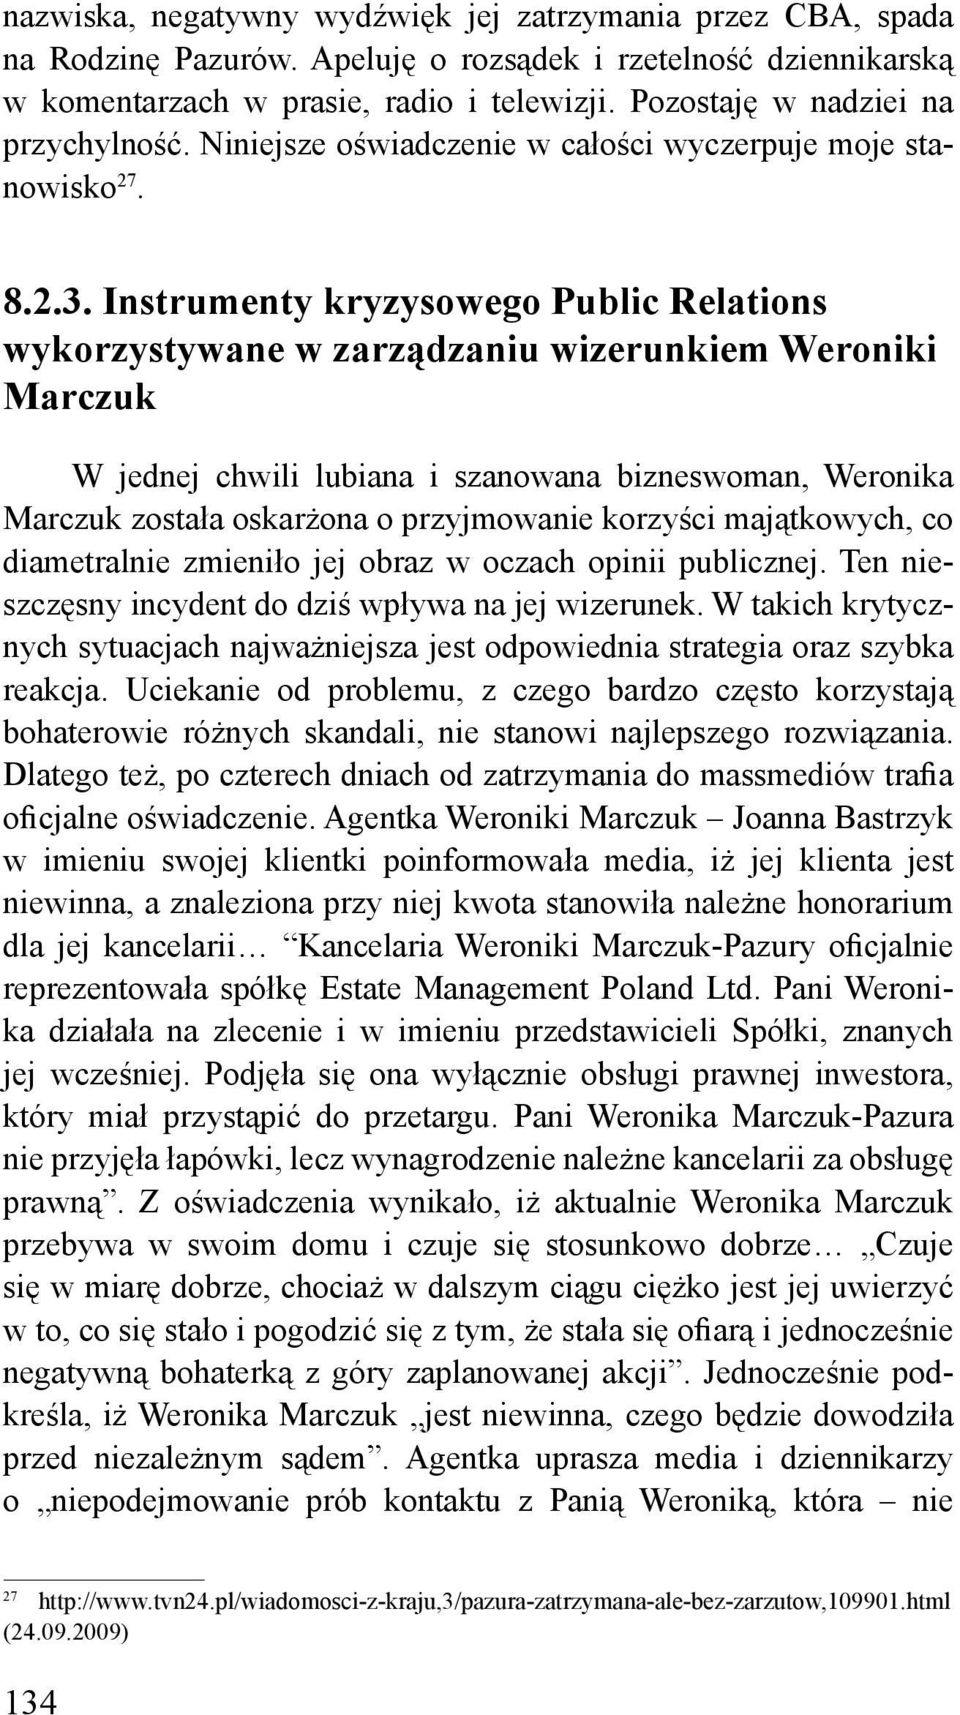 Instrumenty kryzysowego Public Relations wykorzystywane w zarządzaniu wizerunkiem Weroniki Marczuk W jednej chwili lubiana i szanowana bizneswoman, Weronika Marczuk została oskarżona o przyjmowanie